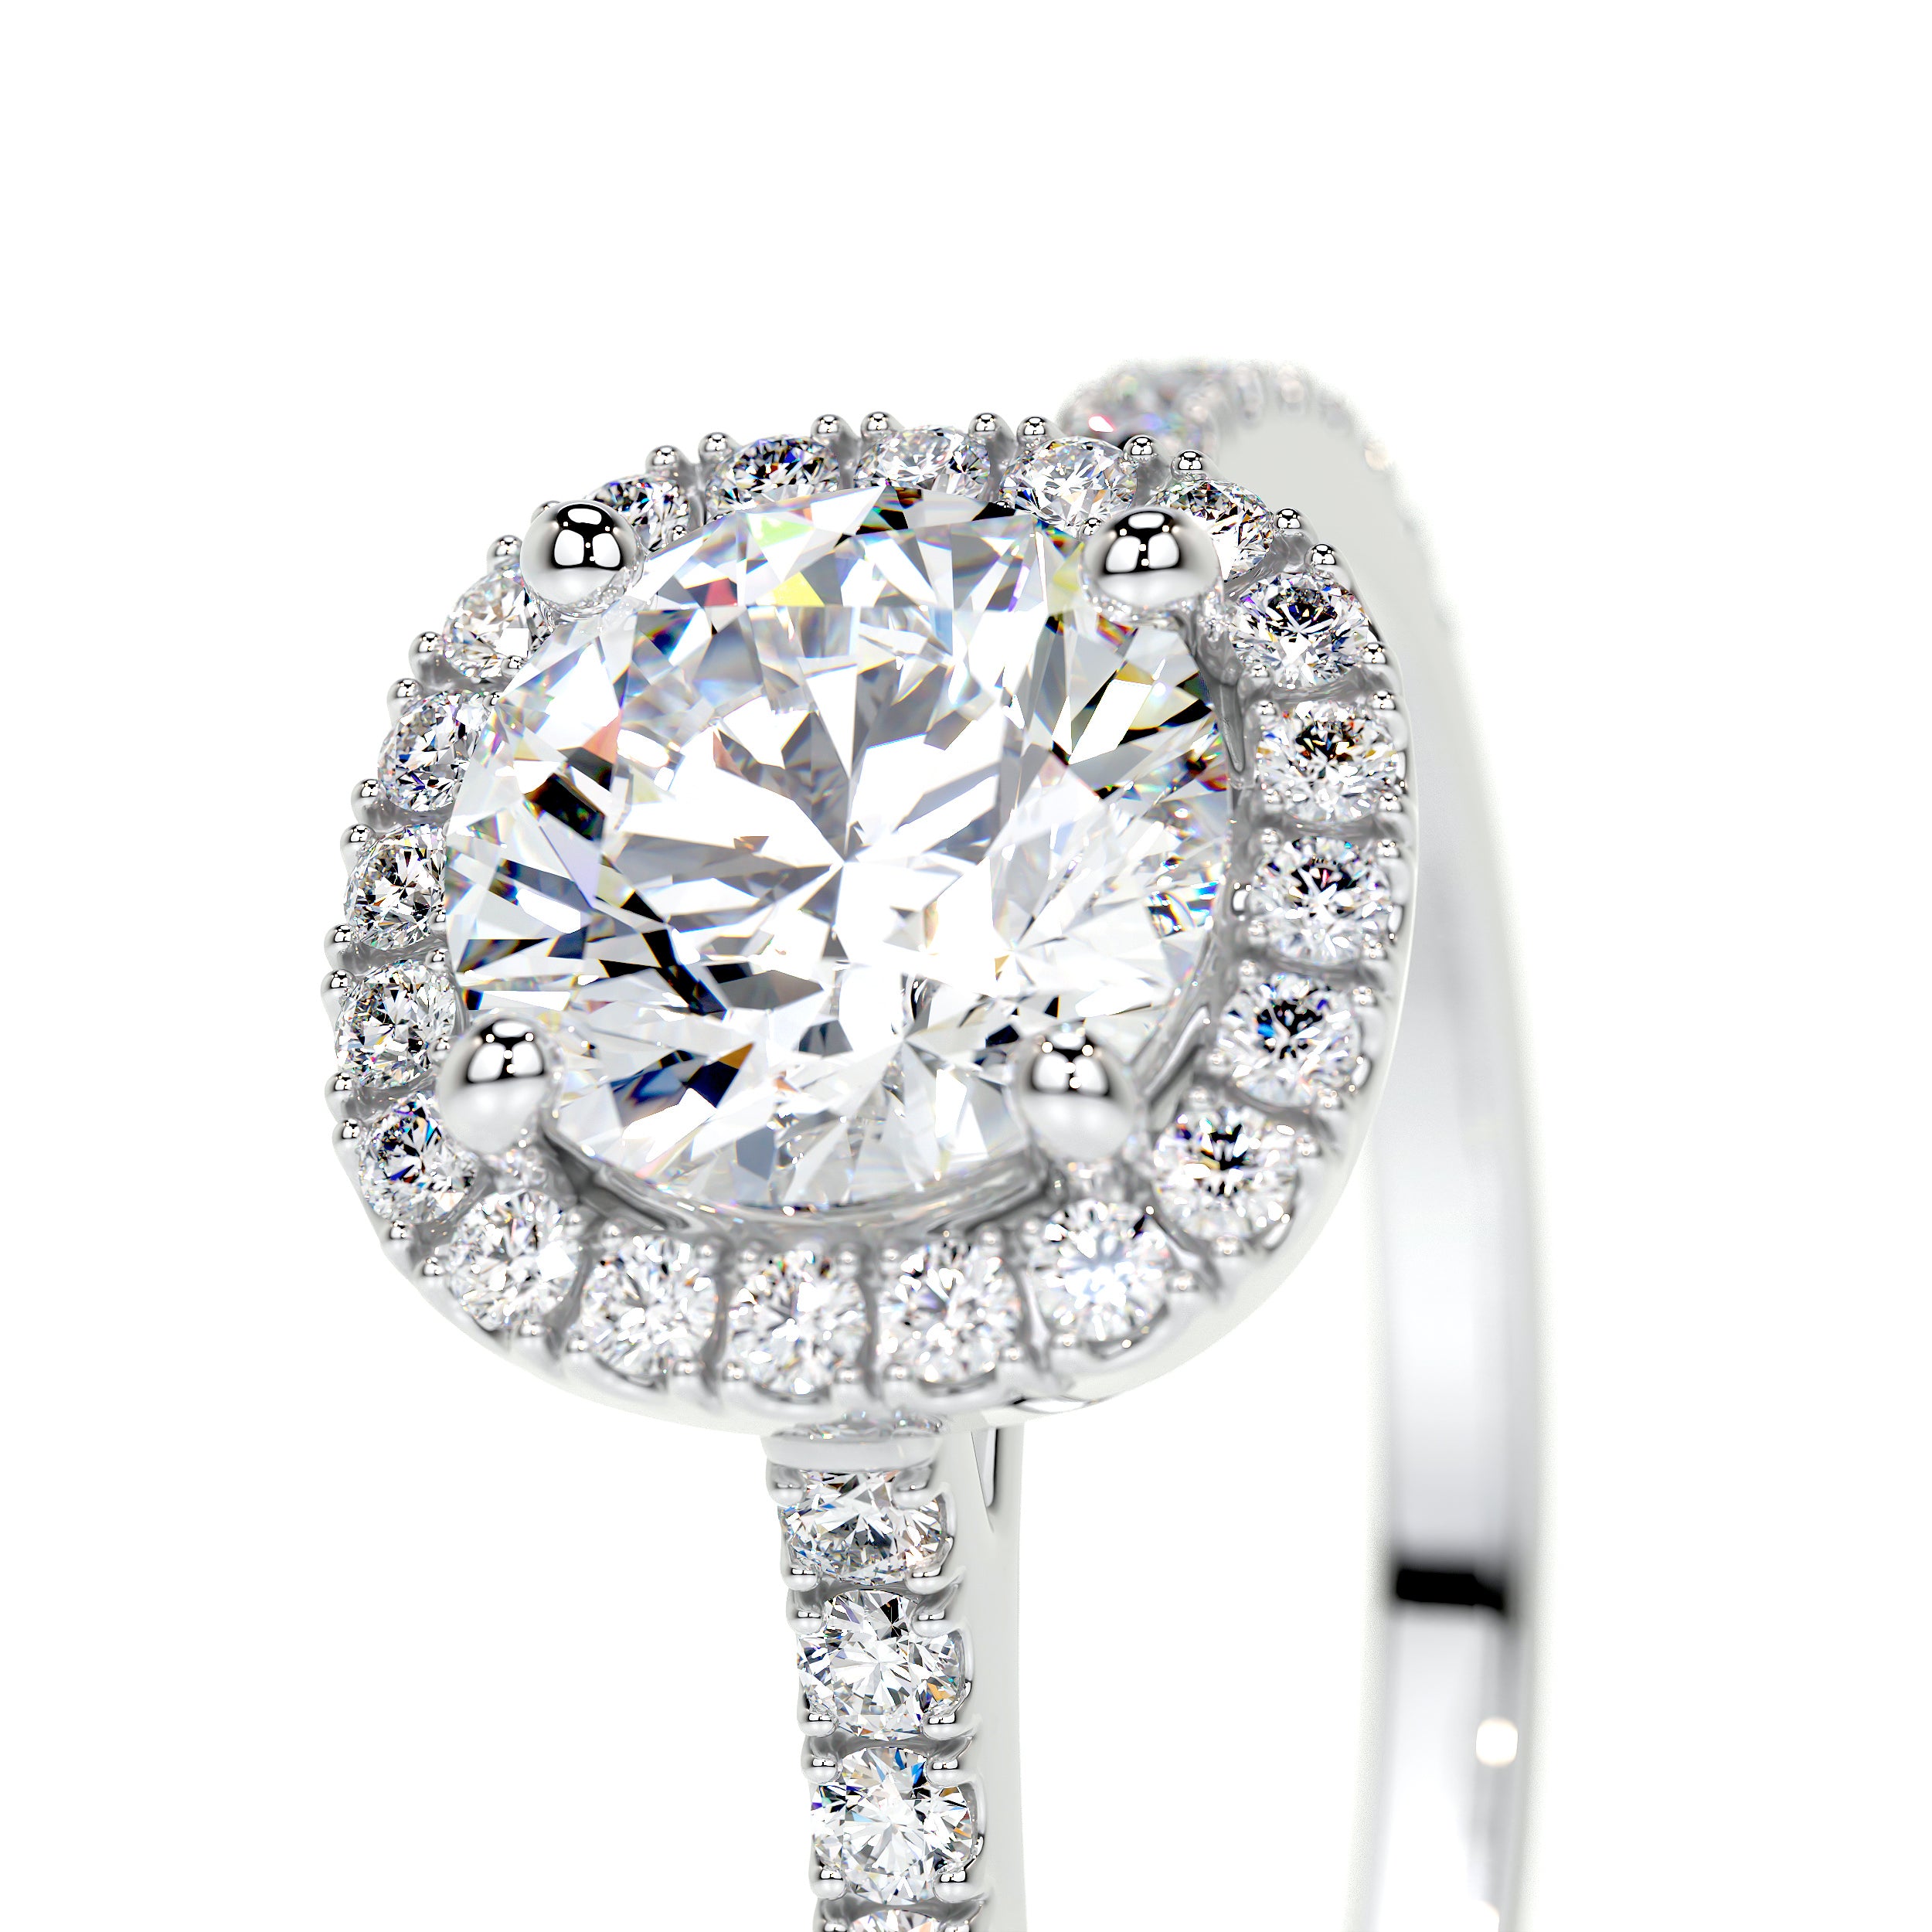 Claudia Lab Grown Diamond Ring   (1.35 Carat) -14K White Gold